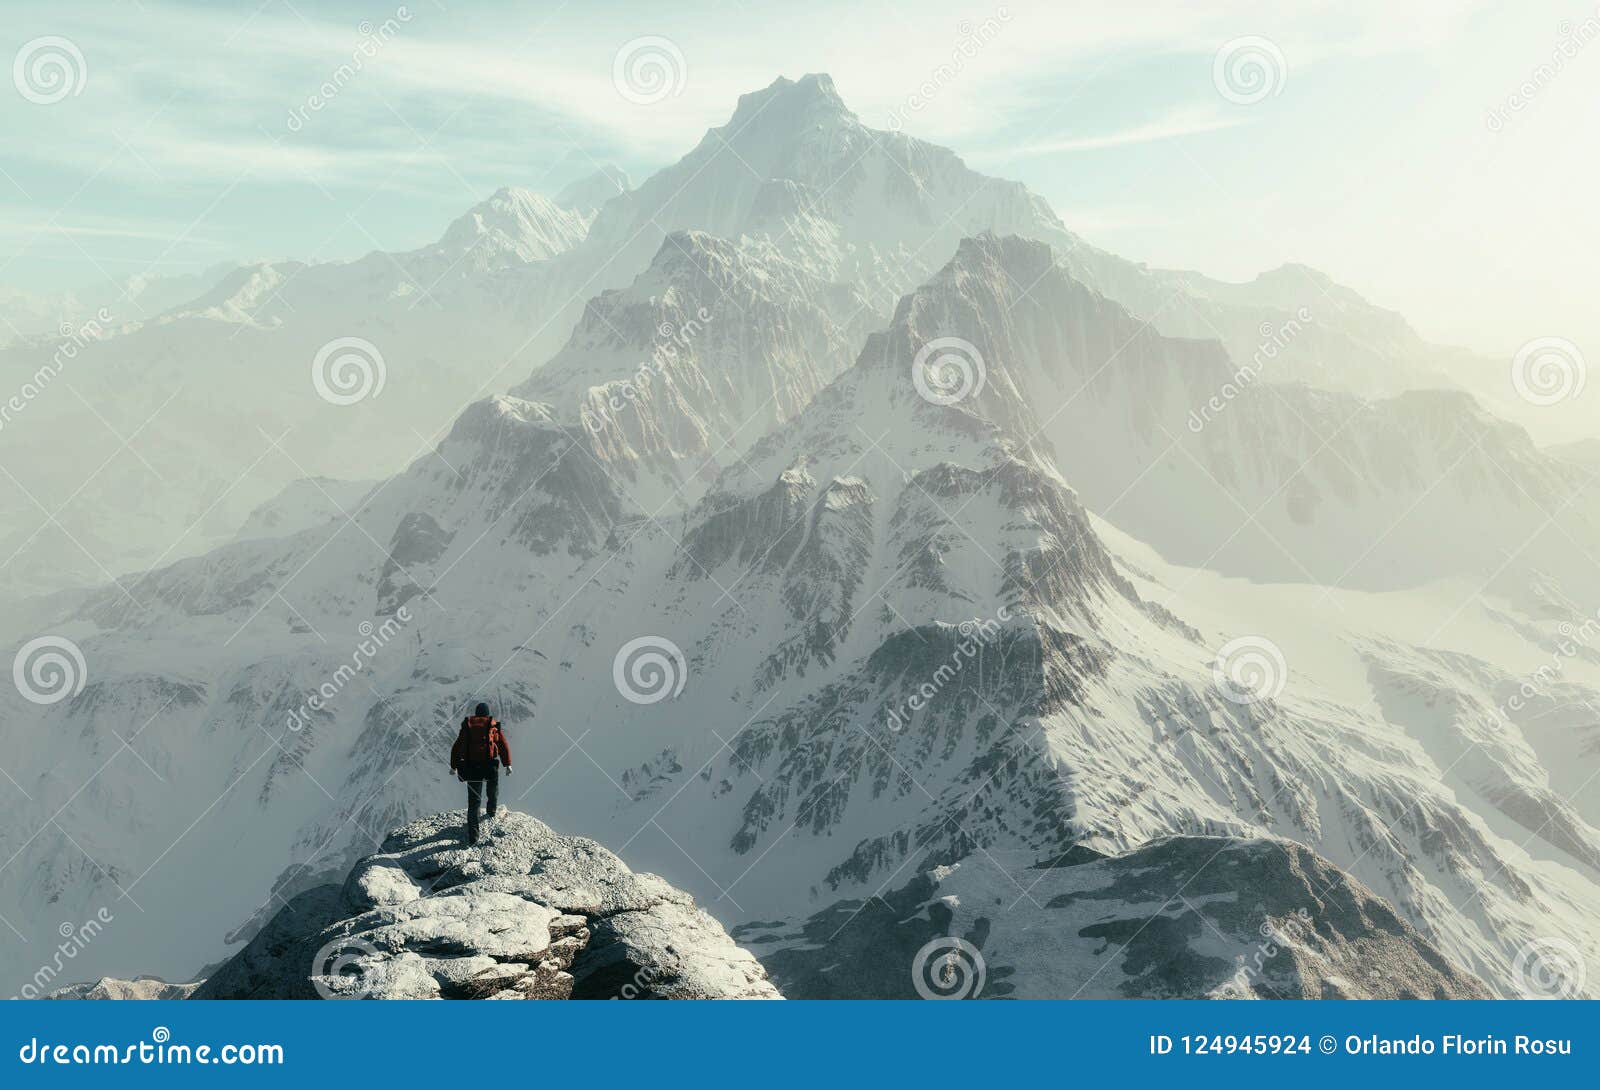 conceptual image of a man hiker